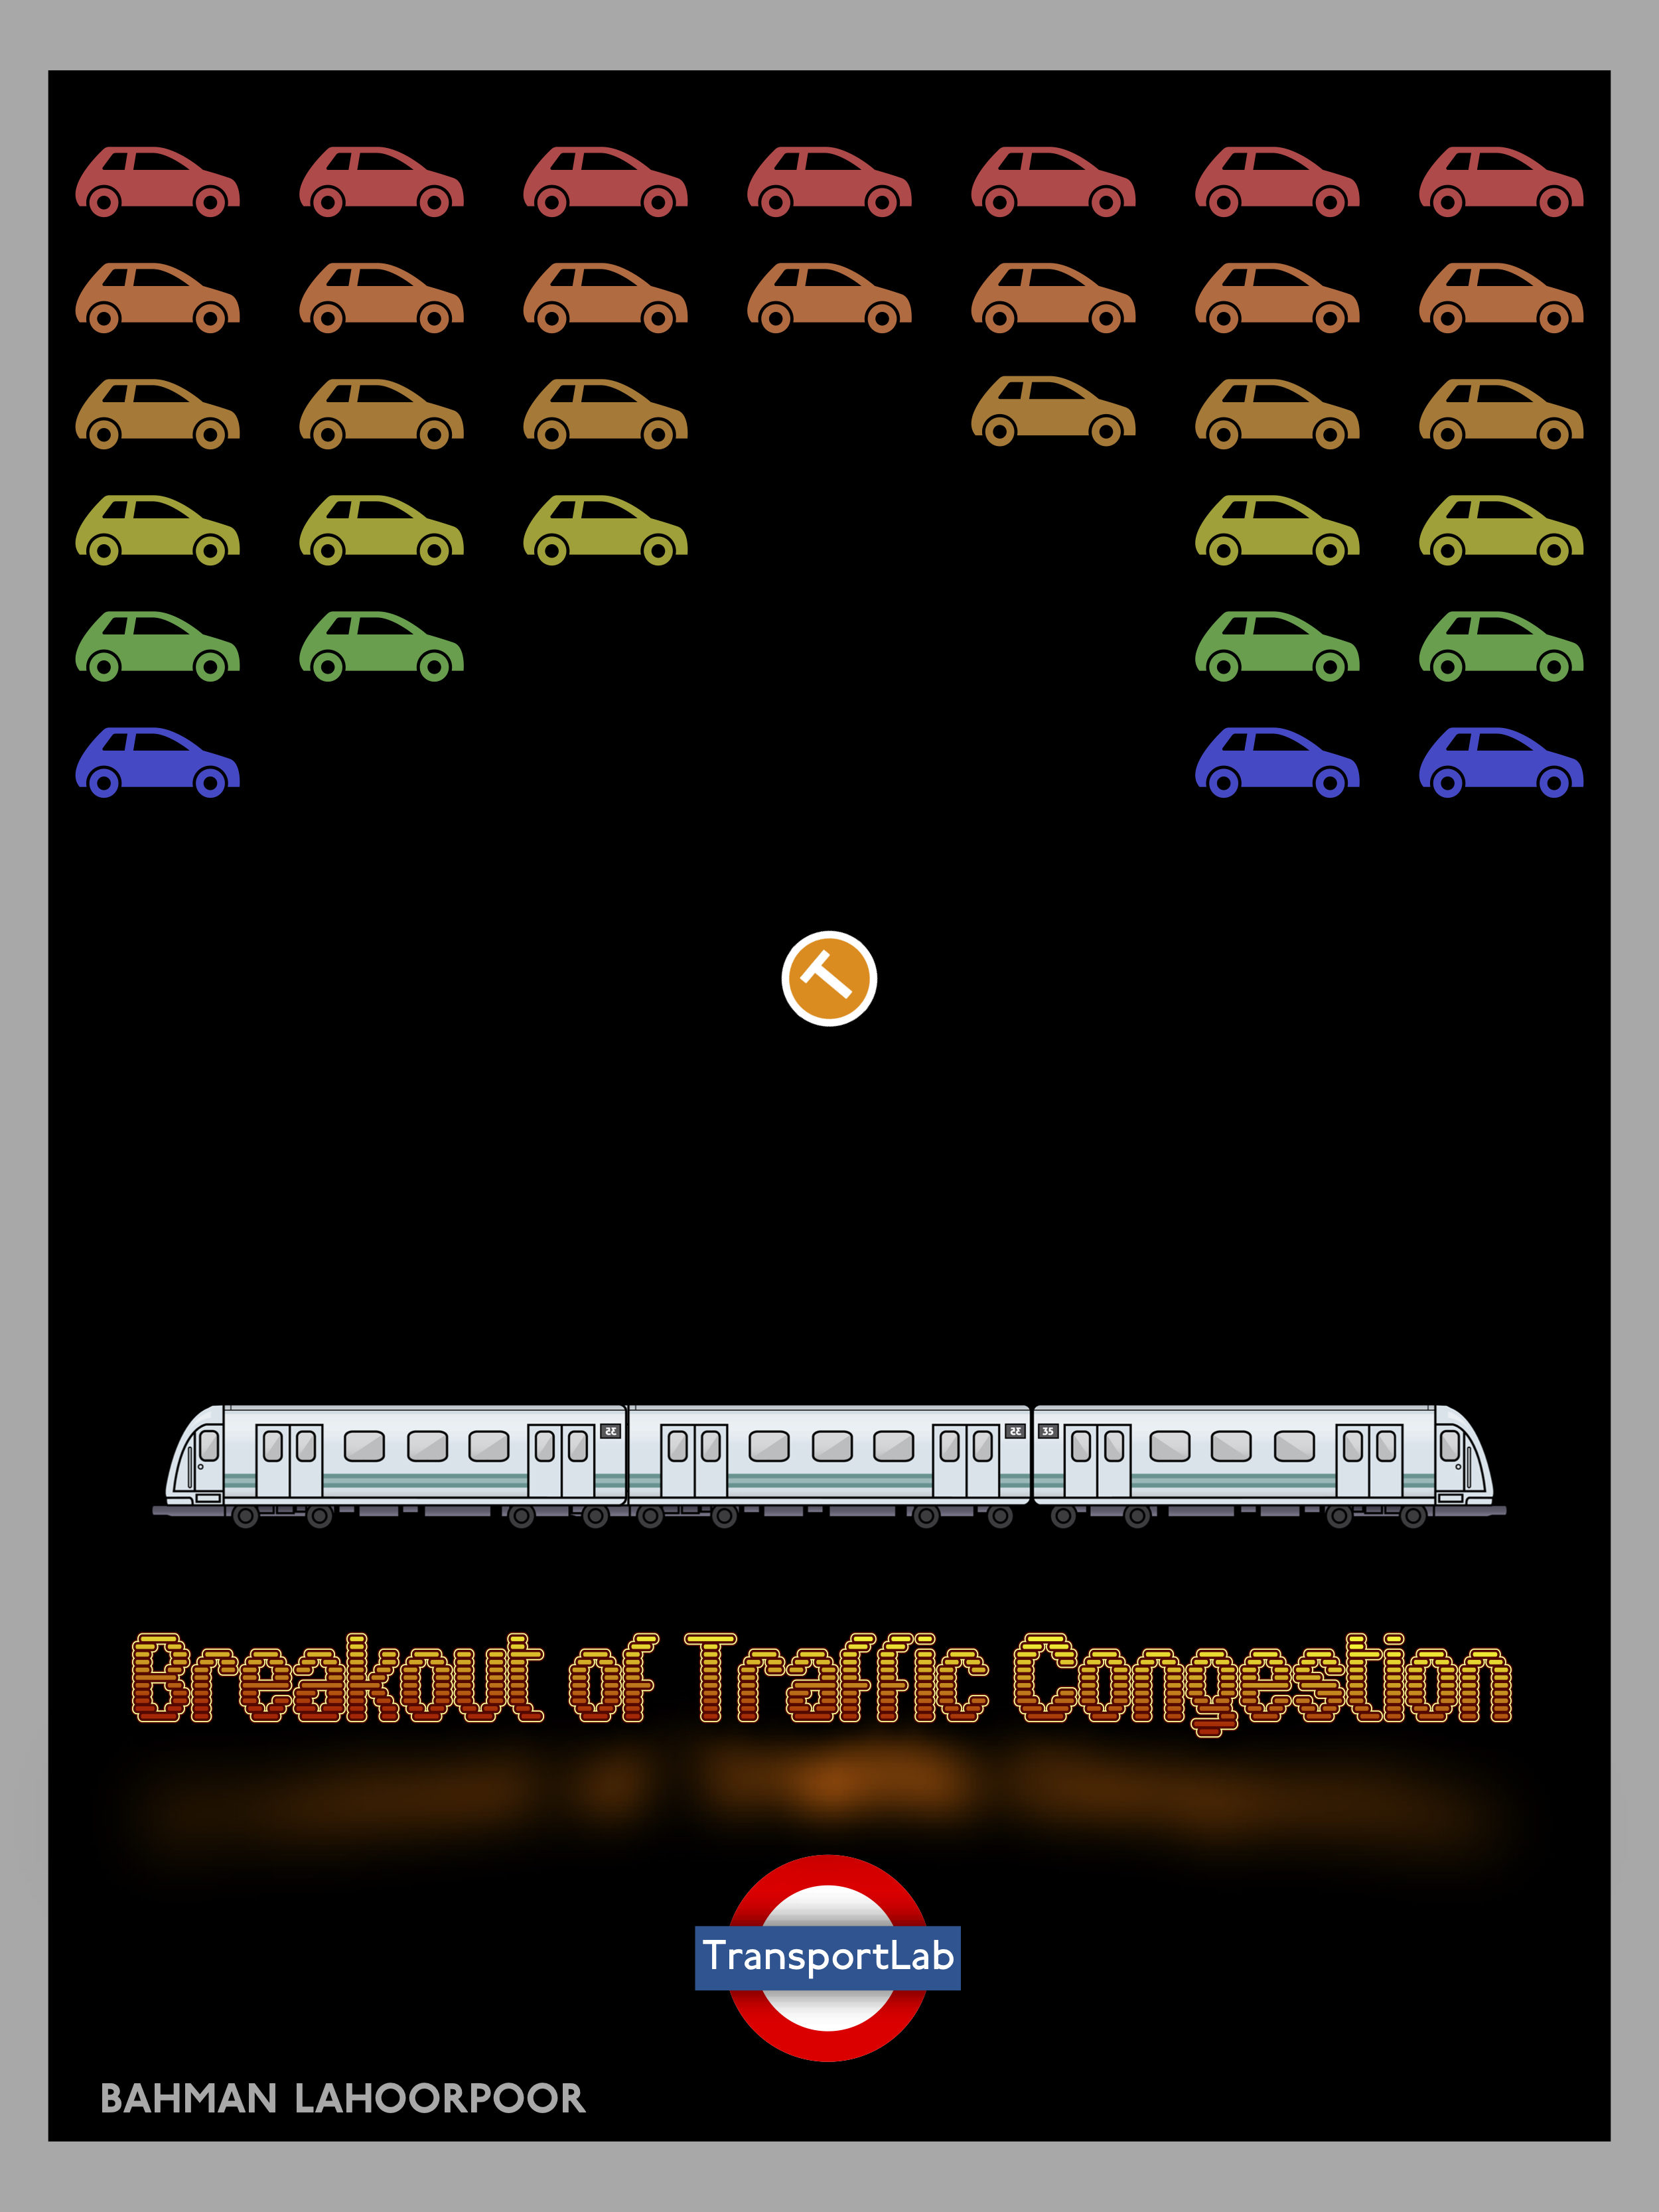 Breakout of Traffic Congestion. Created by Bahman Lahoorpoor of TransportLab.